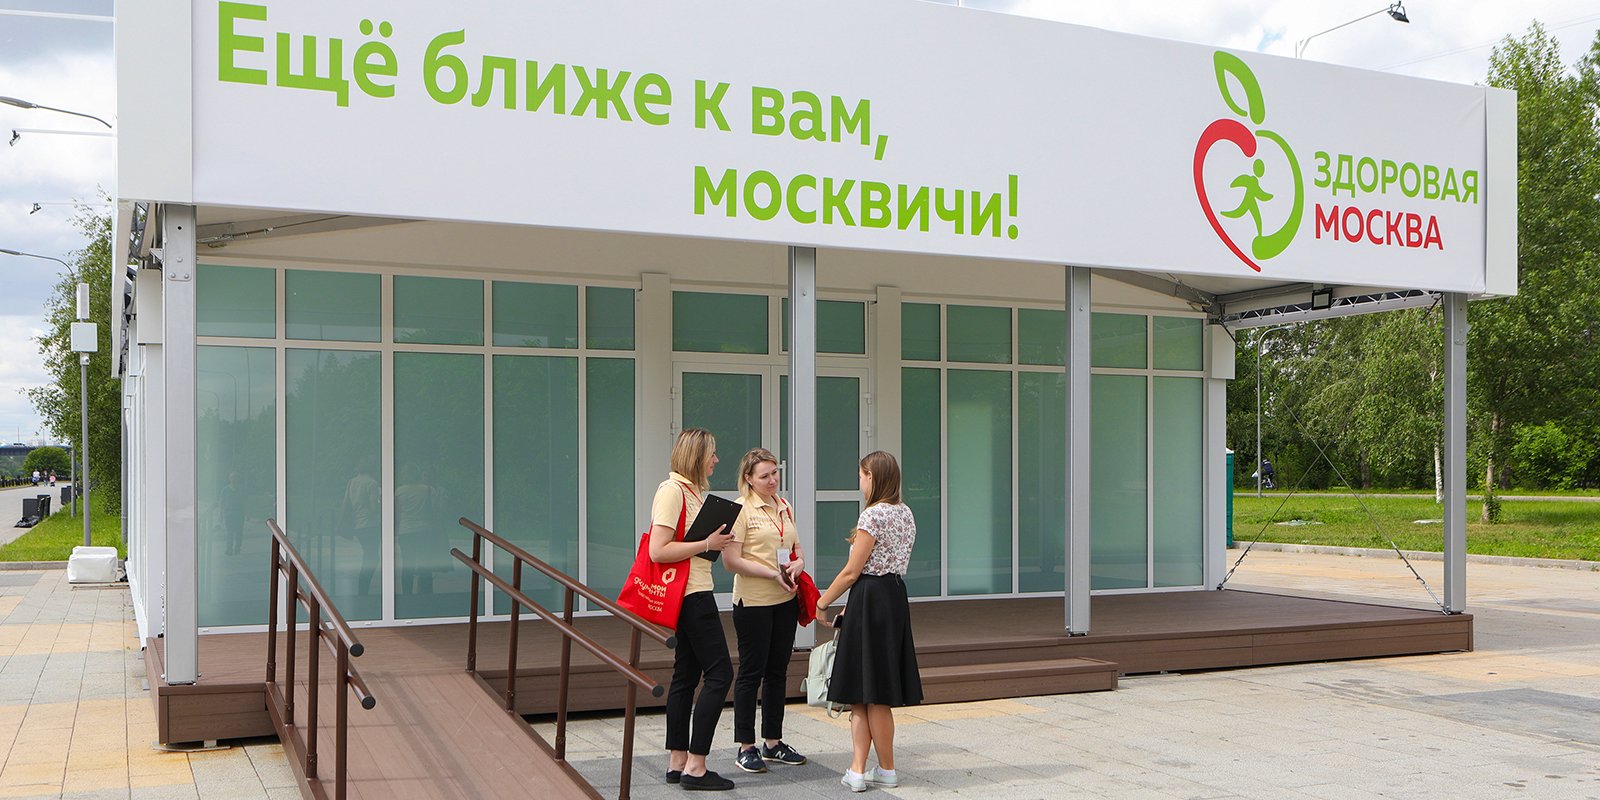 Почти 35 тысяч человек проверили здоровье в павильонах «Здоровая Москва»